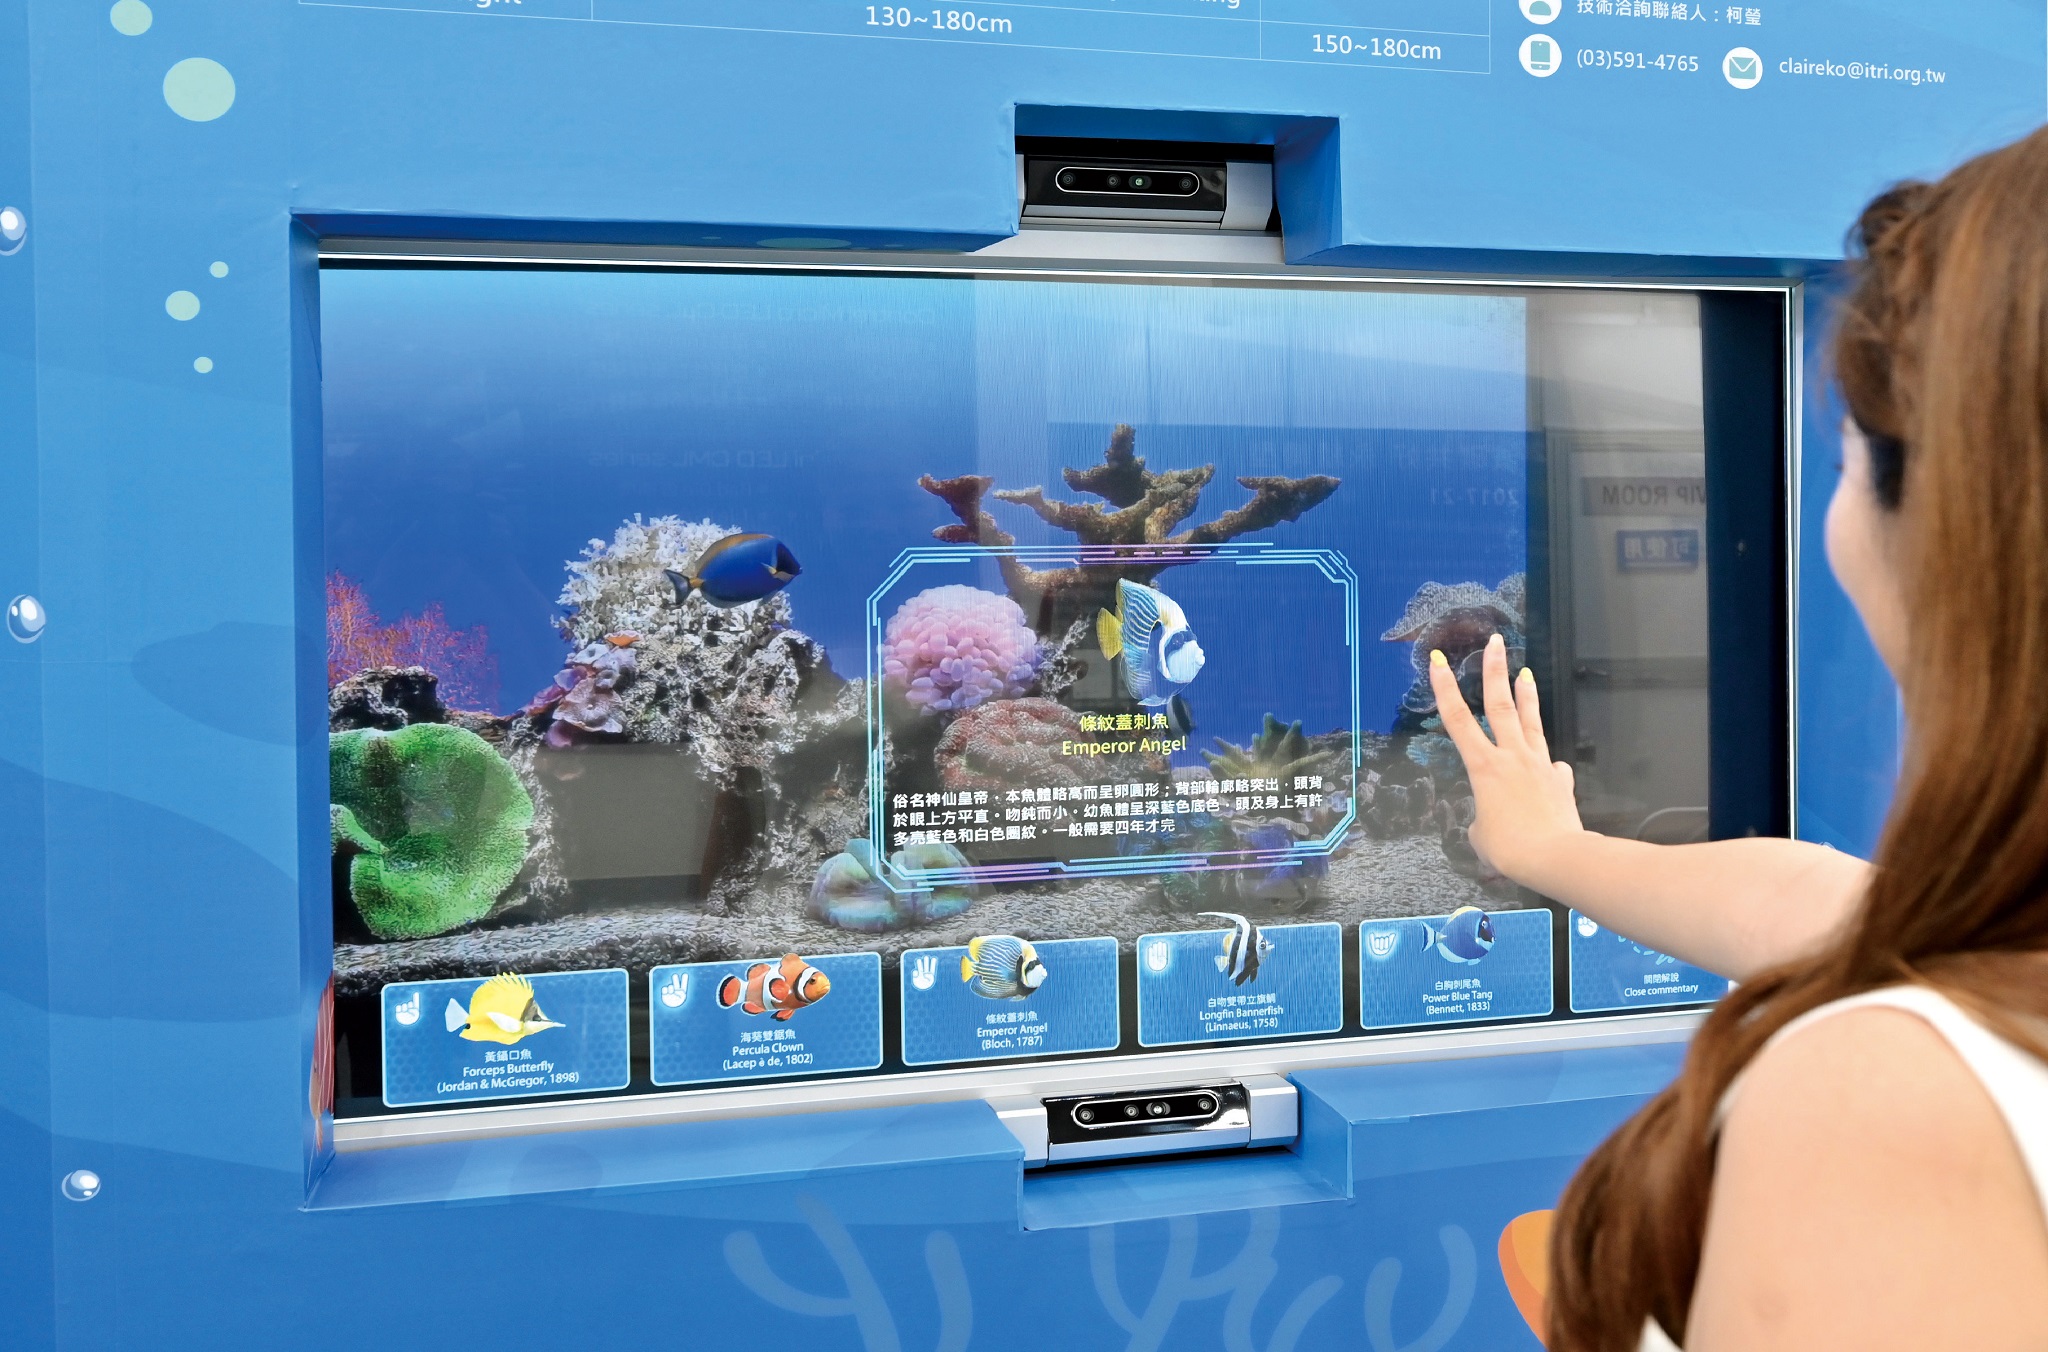 「我視AI魚缸」能隨著觀眾視野和水中魚兒位置，即時秀出魚兒資訊，還支援手勢辨識，遊客只要比出0到6手勢，也能看到相對應的魚隻介紹。